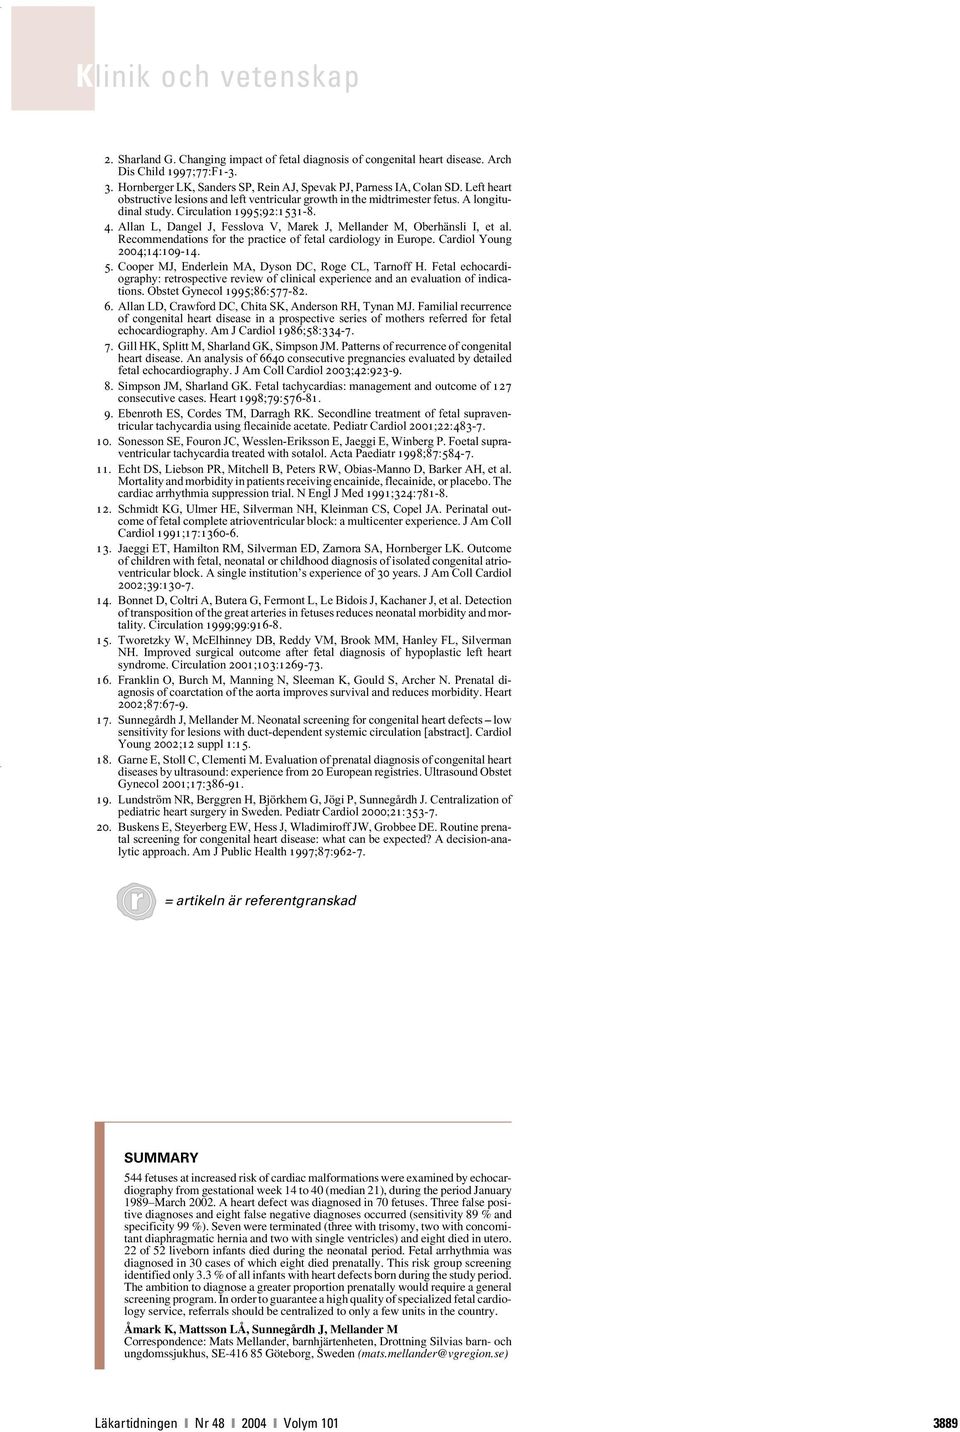 Allan L, Dangel J, Fesslova V, Marek J, Mellander M, Oberhänsli I, et al. Recommendations for the practice of fetal cardiology in Europe. Cardiol Young 2004;14:109-14. 5.